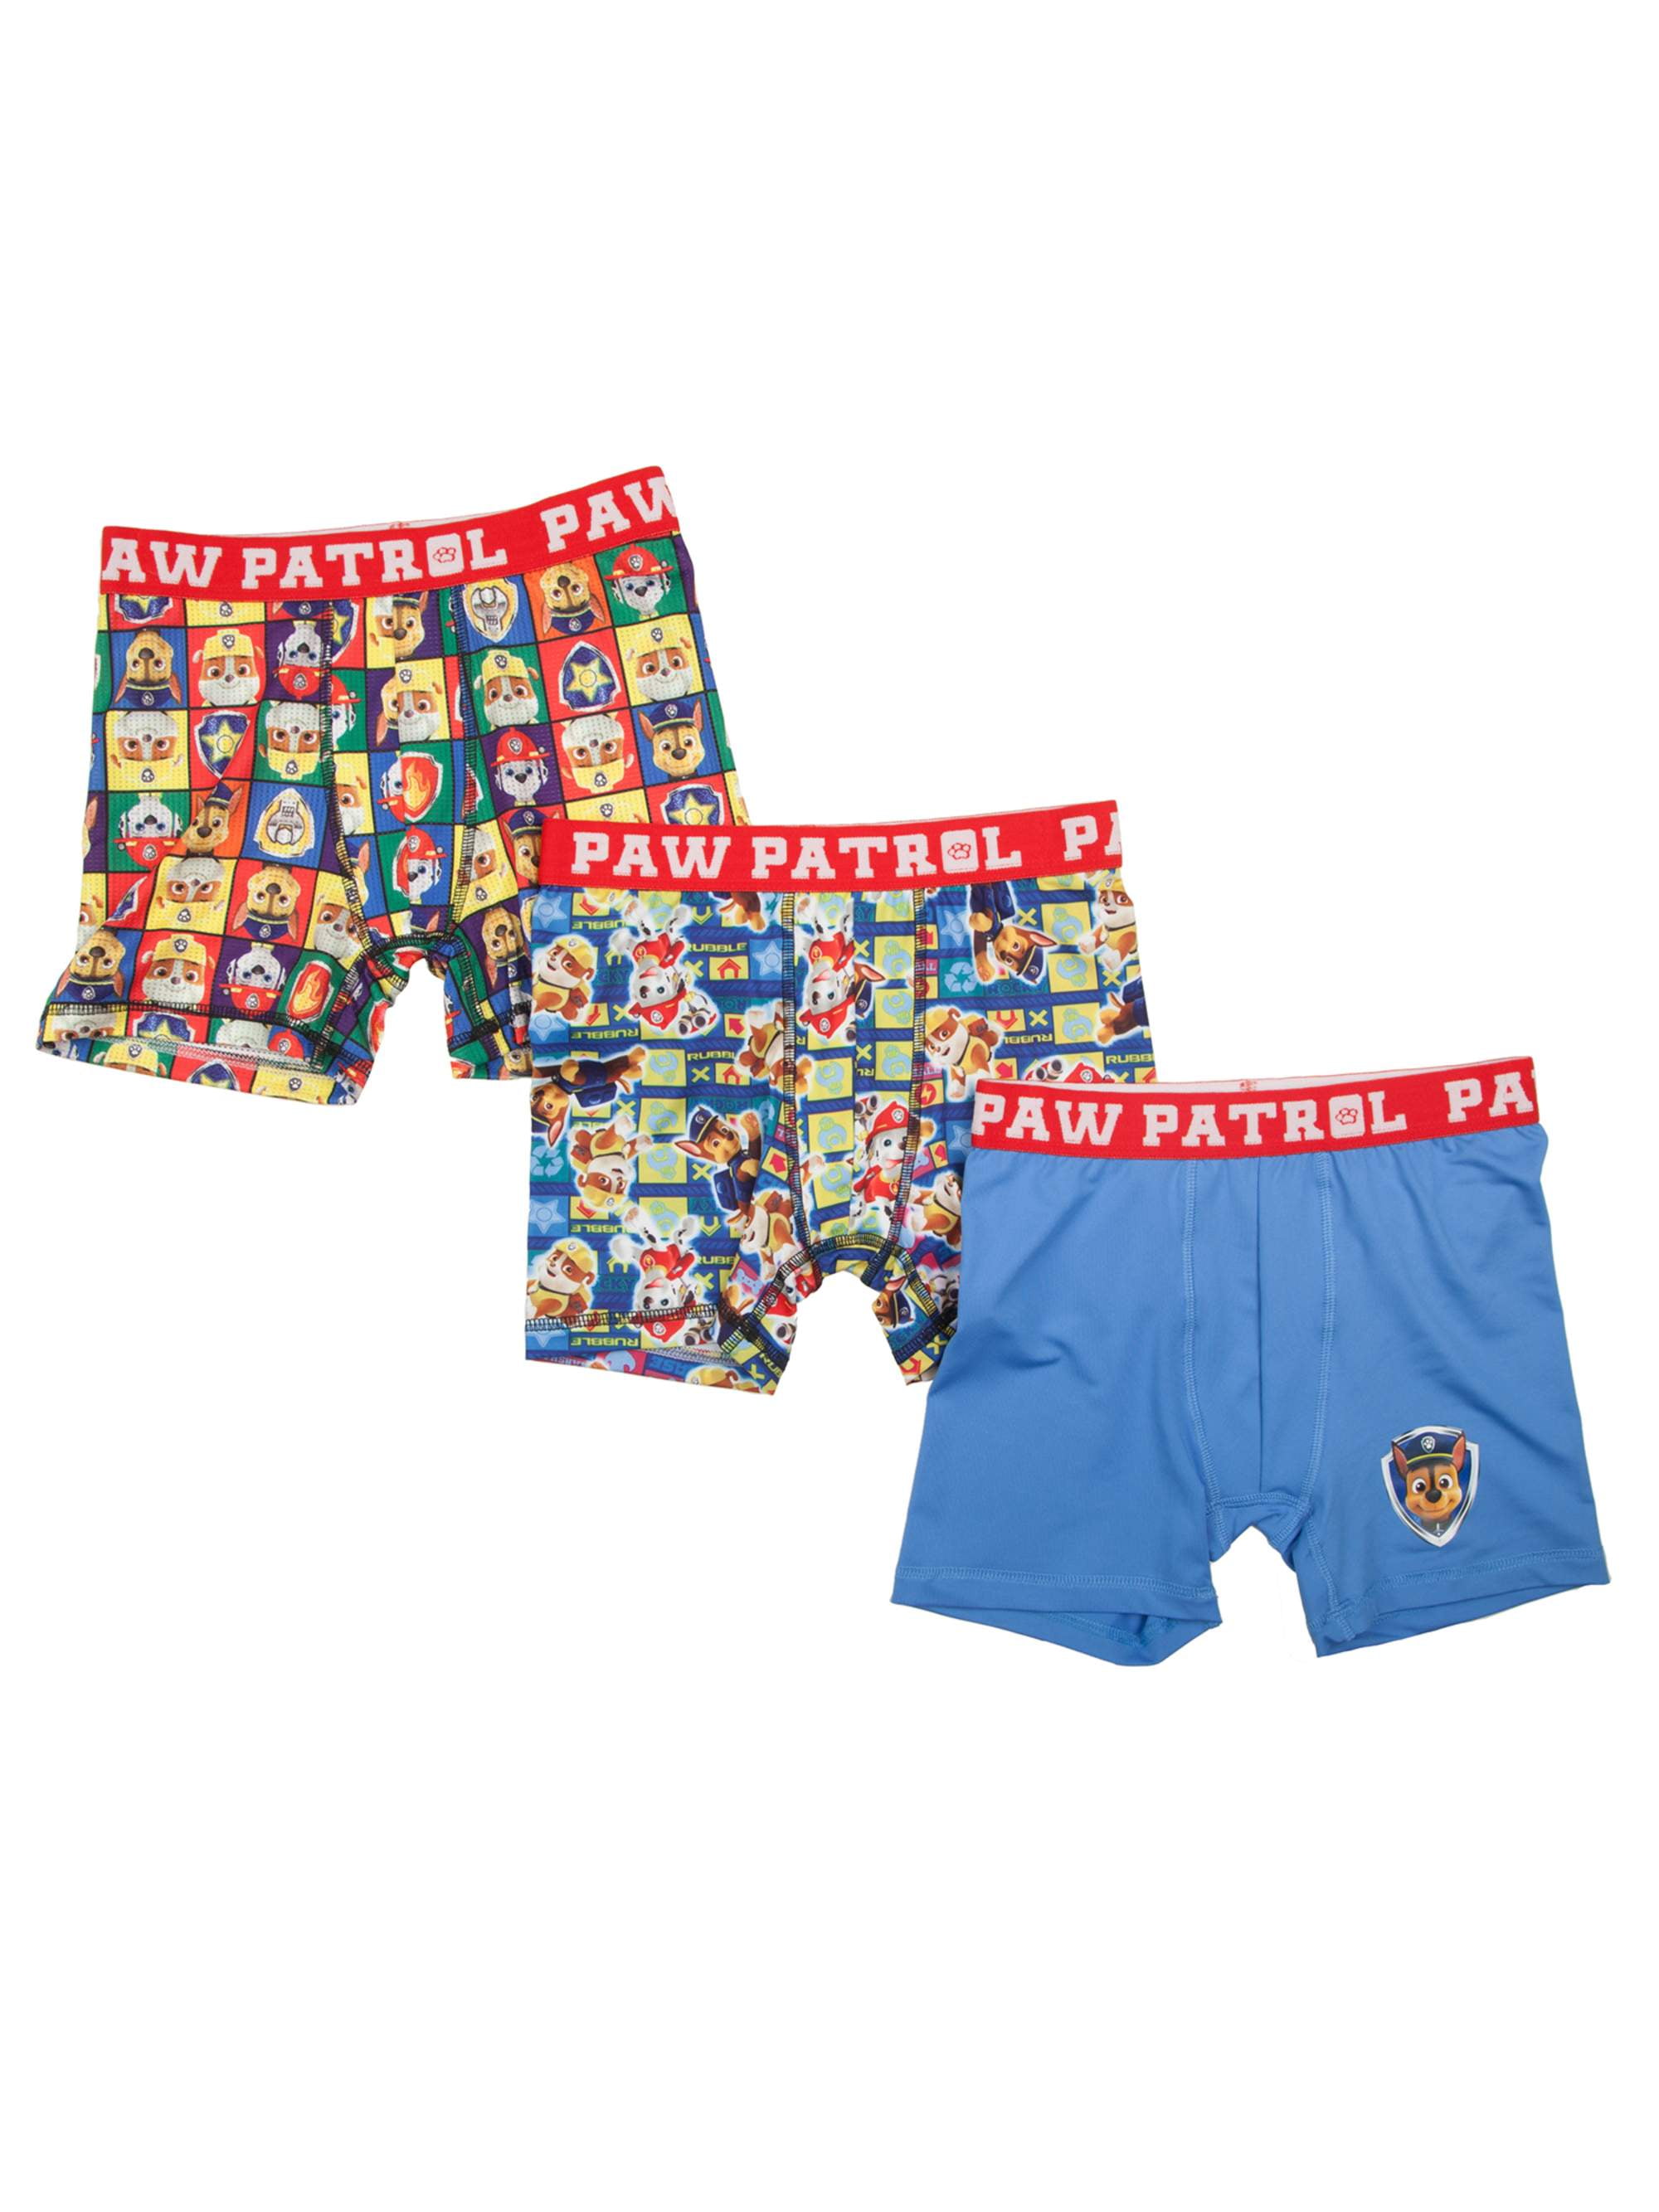 Paw Patrol Boys Underwear, 3 Pack Poly Boxer Briefs (Little Boys & Big Boys)